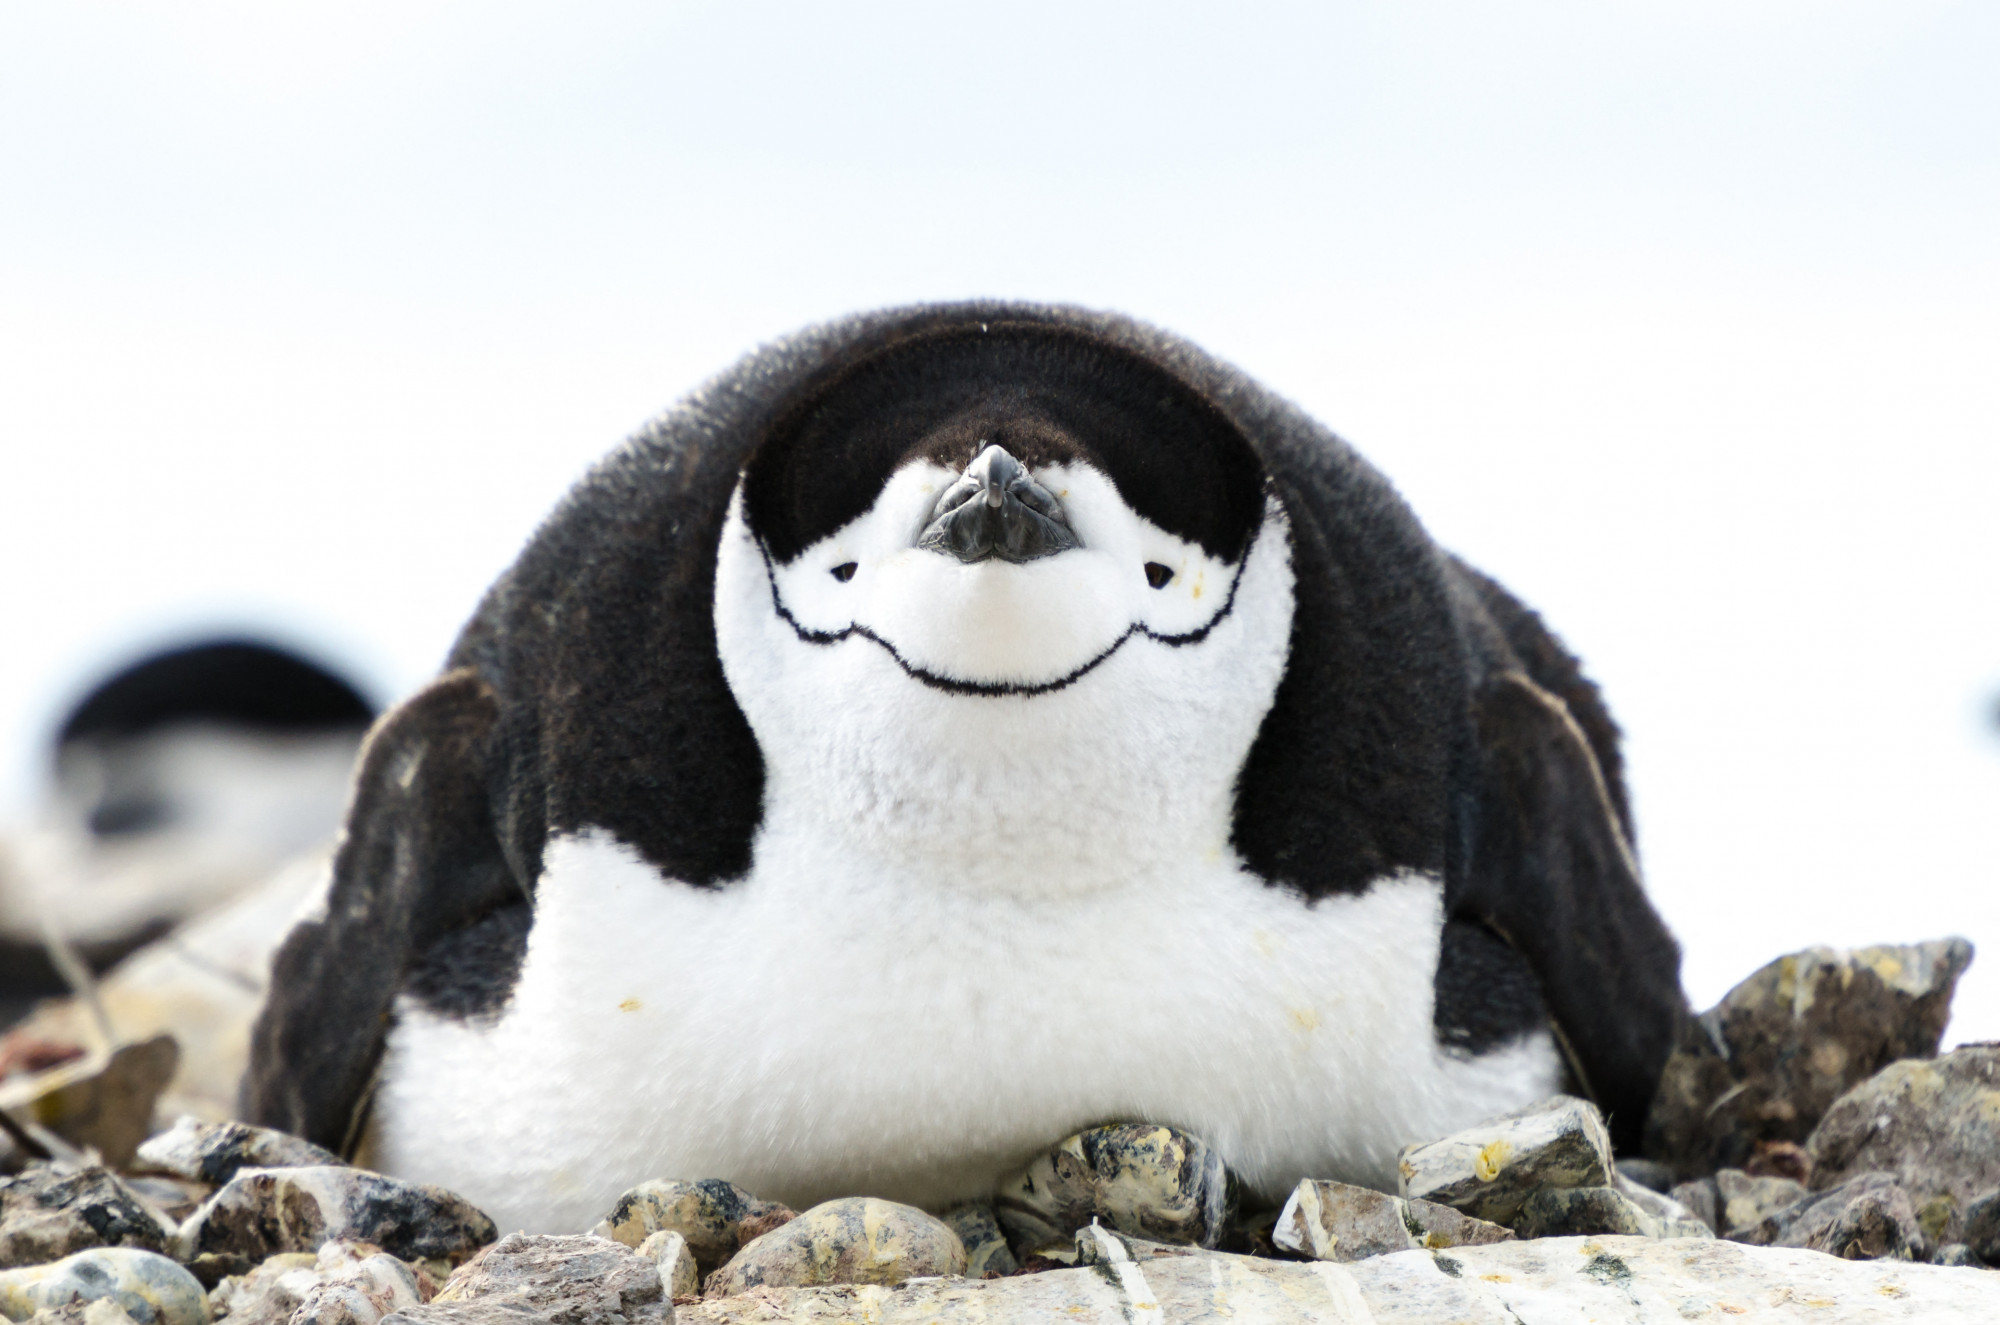 Tojásán ülő állszíjas pingvin költés közben